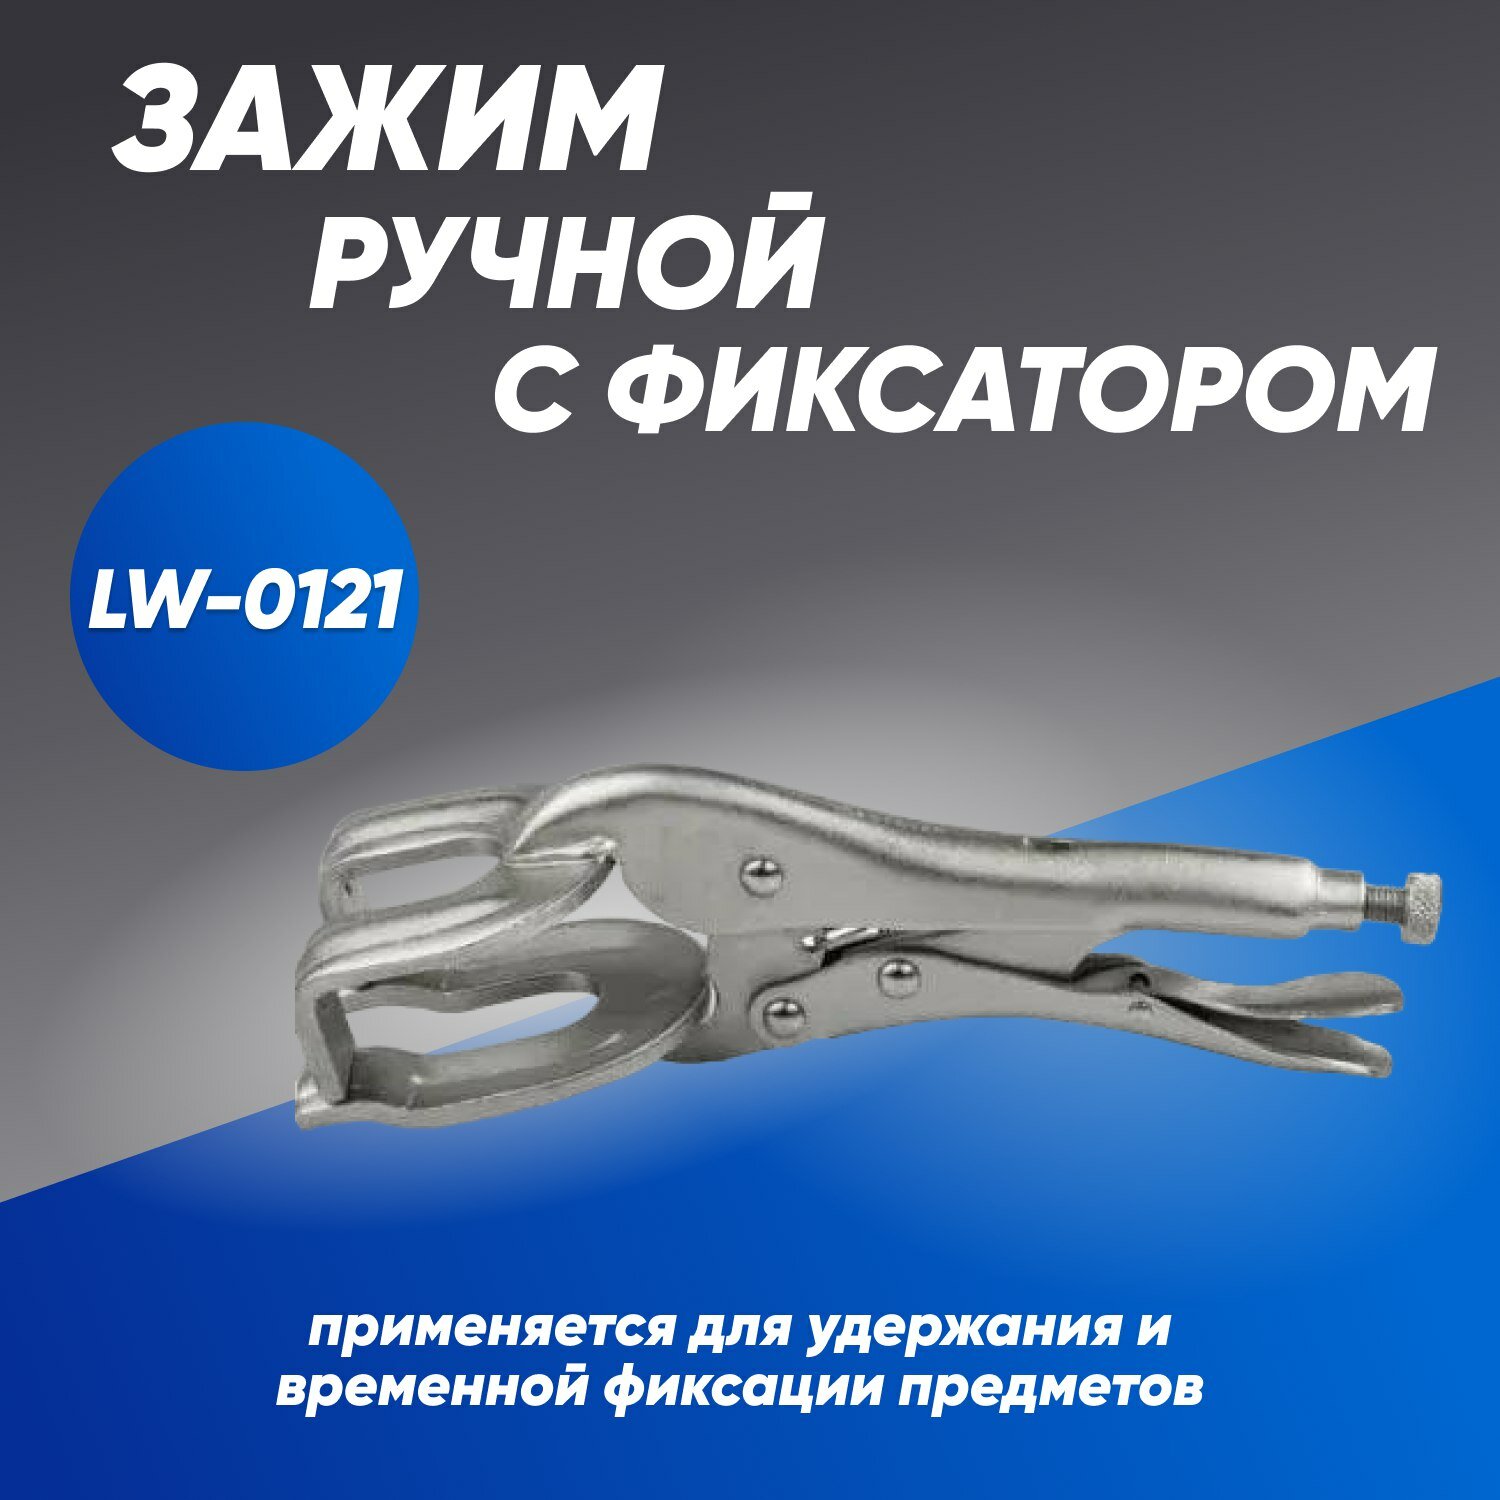 Зажим ручной с фиксатором для сварки LW-0121